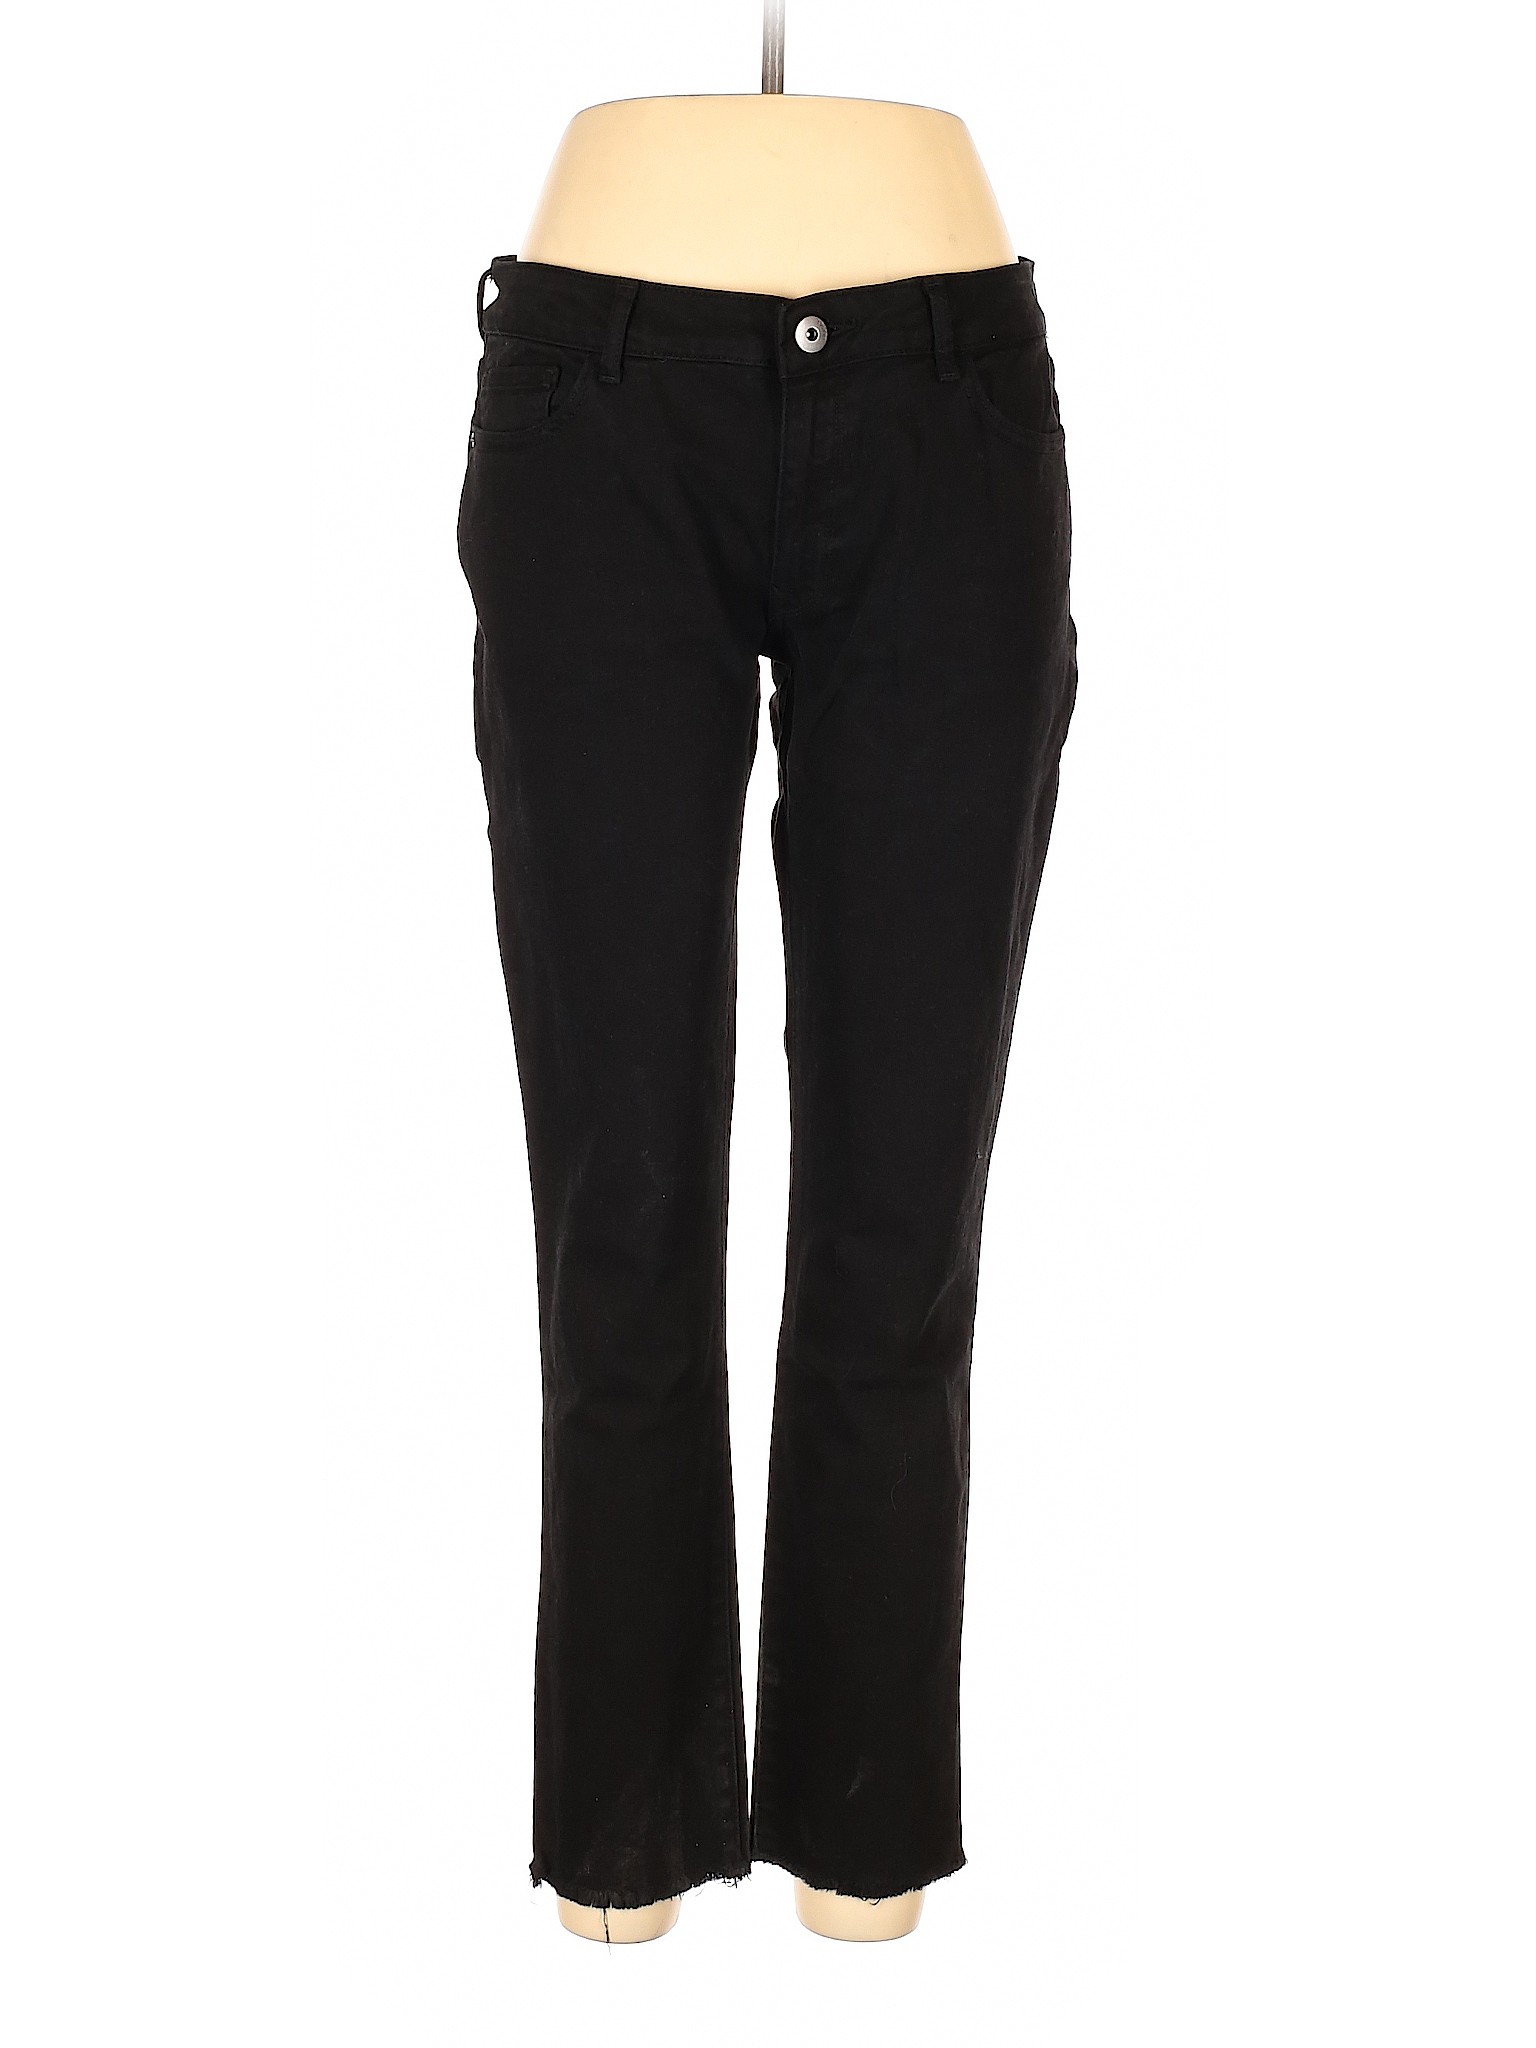 DL1961 Women Black Jeans 32W | eBay